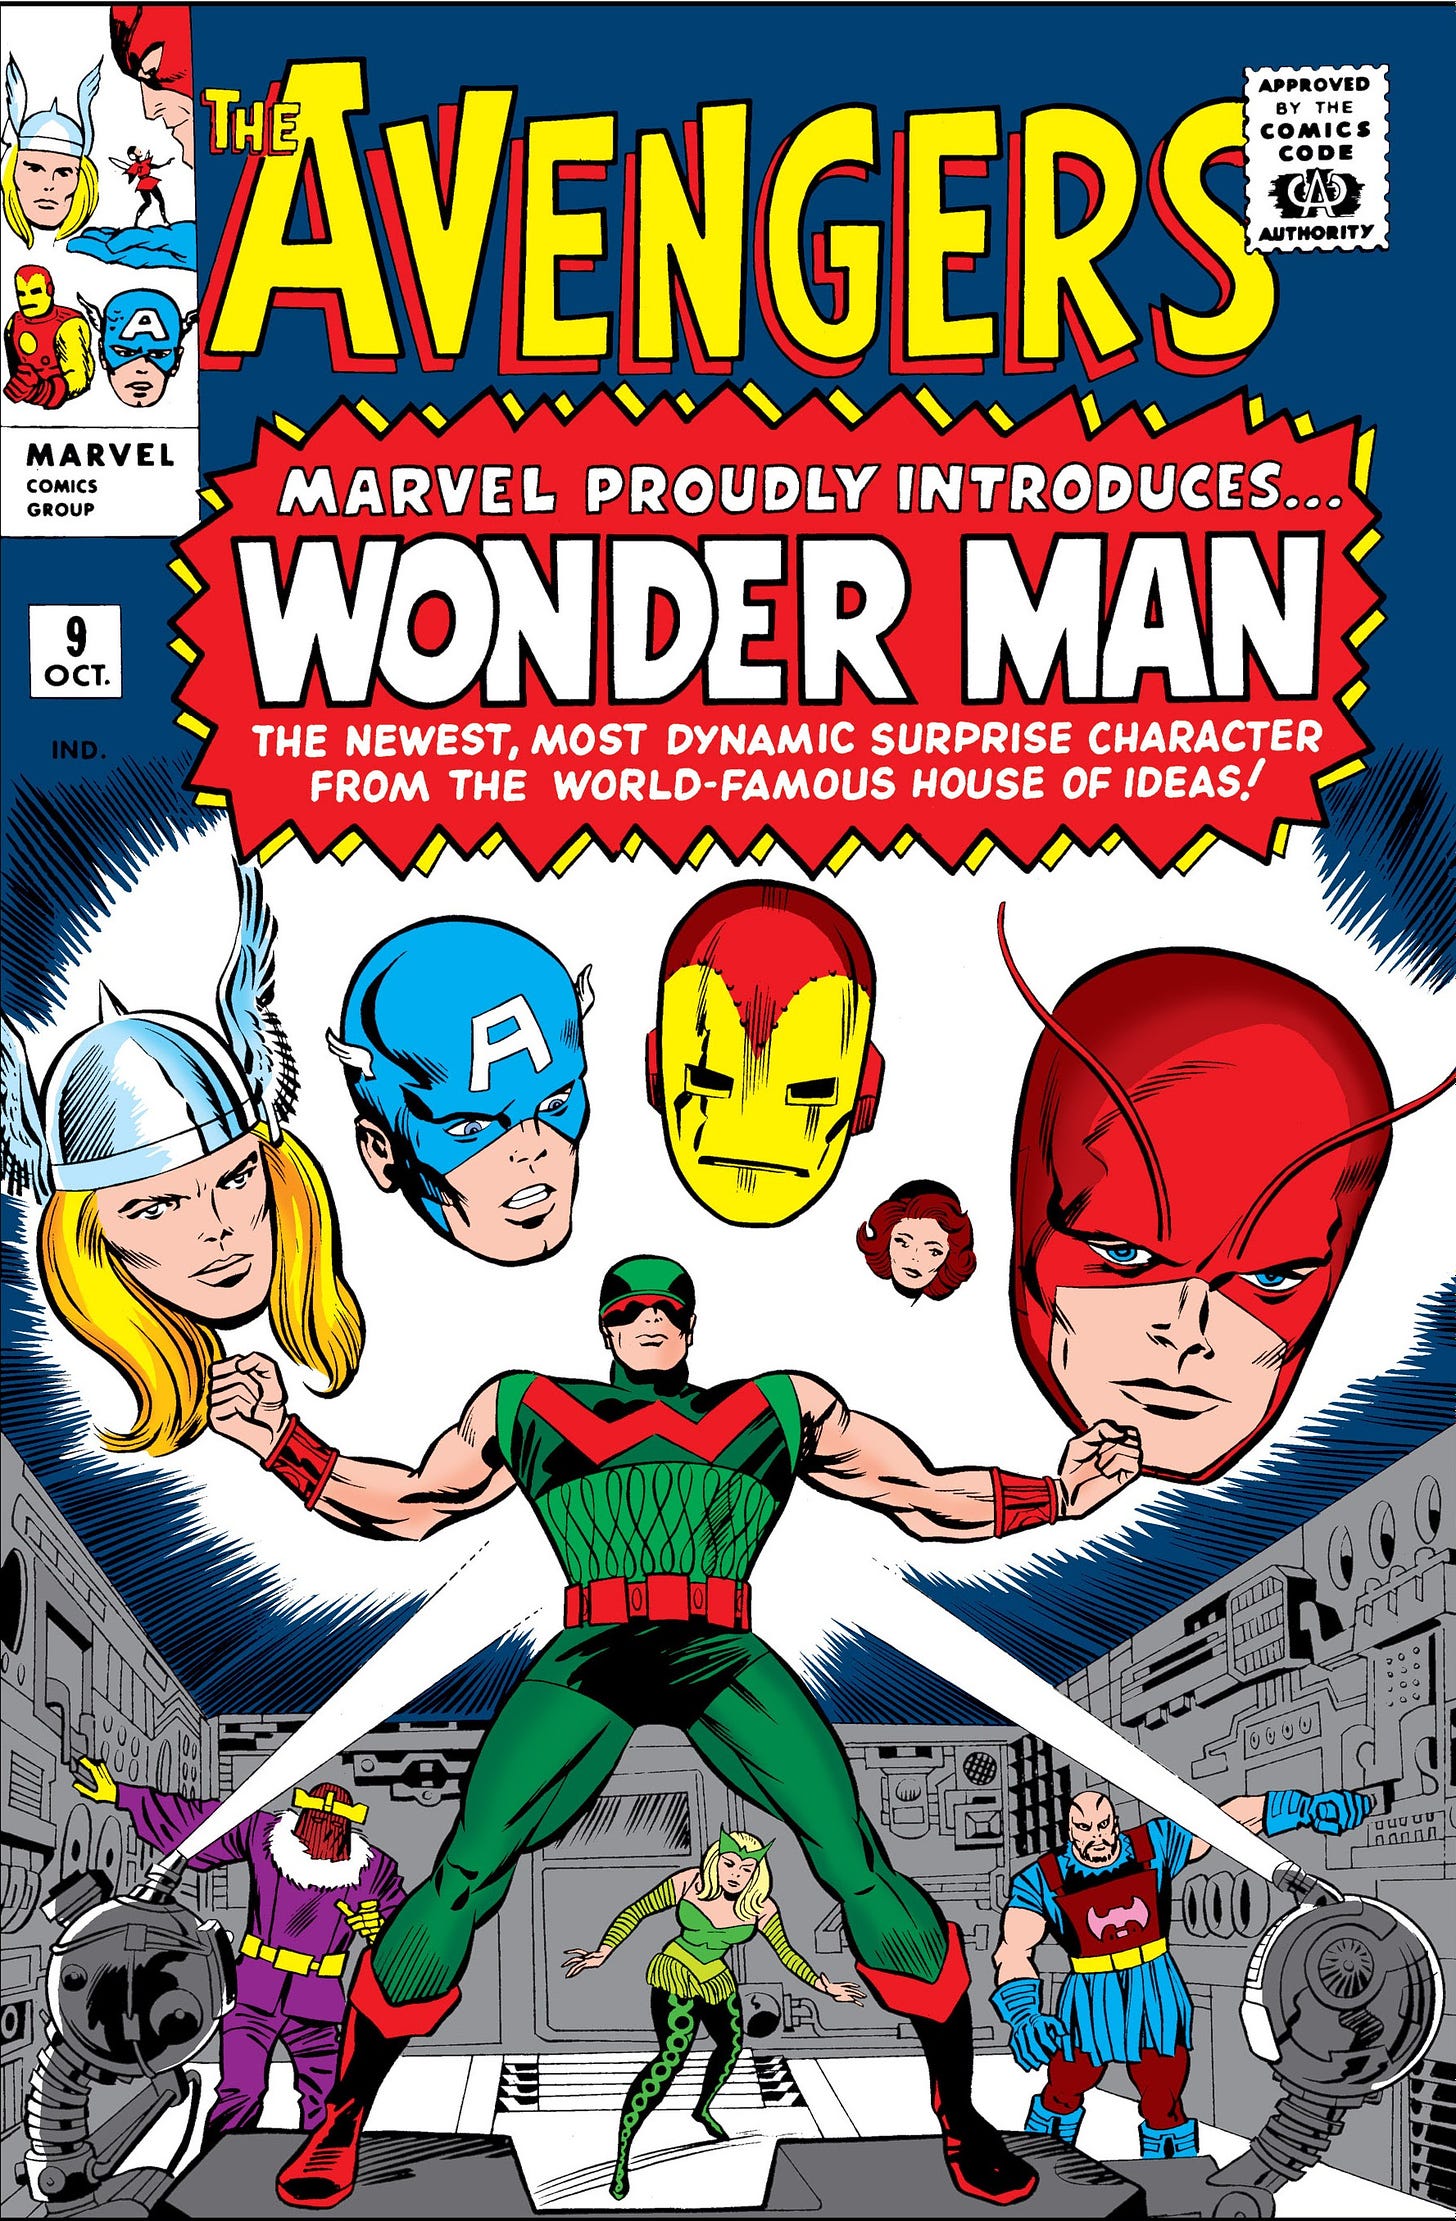 Avengers Vol 1 9 | Marvel Database | Fandom